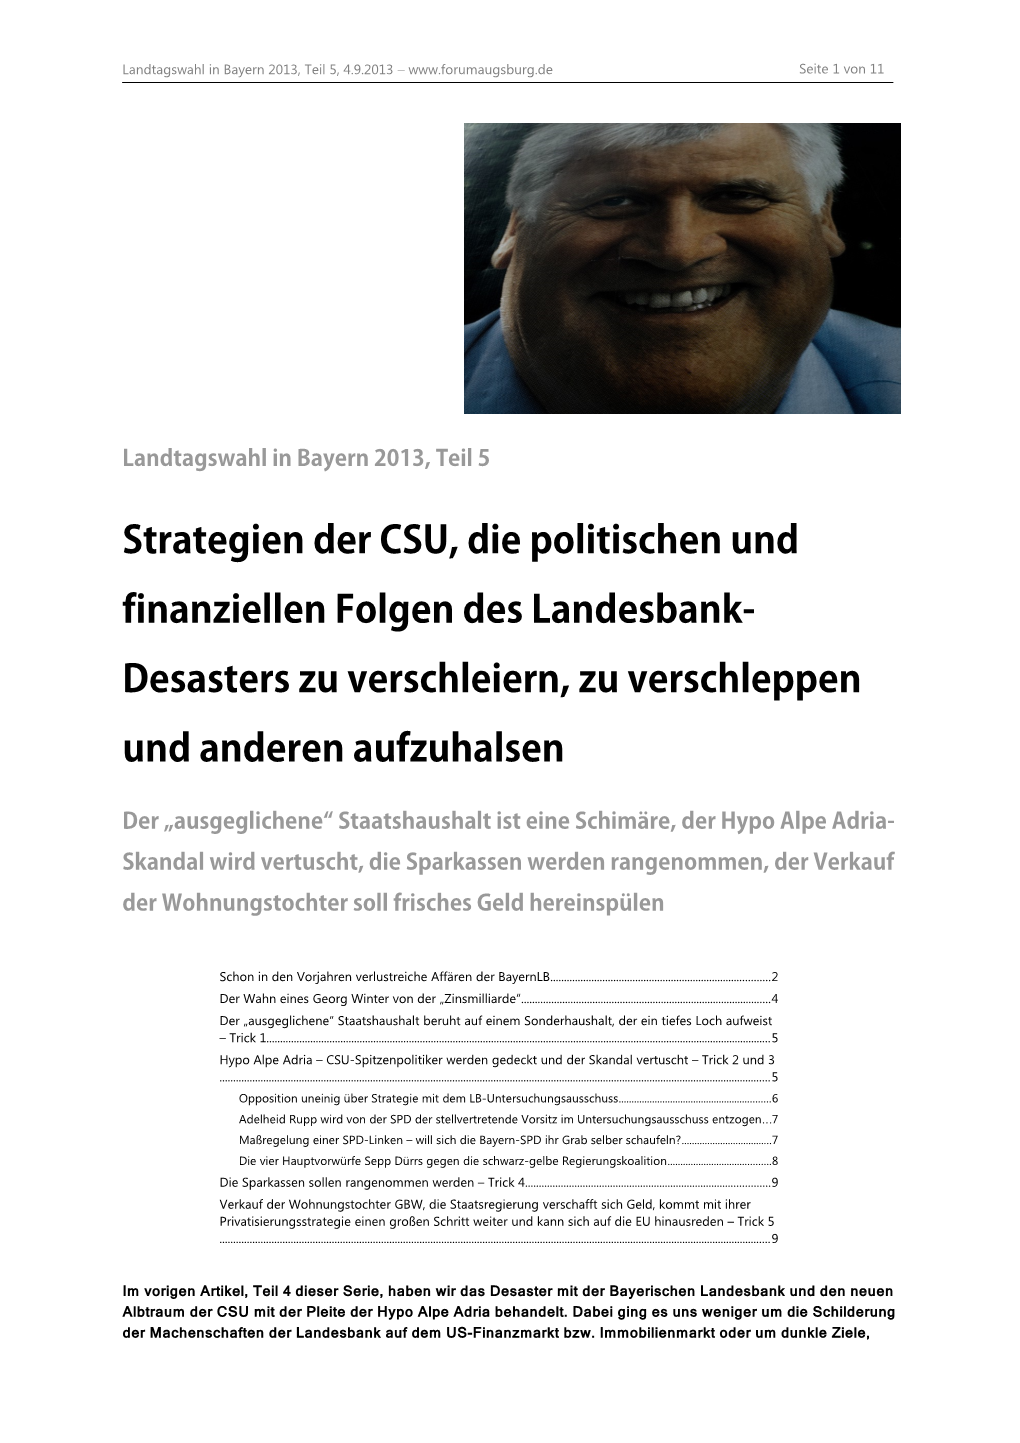 Strategien Der CSU, Die Politischen Und Finanziellen Folgen Des Landesbank- Desasters Zu Verschleiern, Zu Verschleppen Und Anderen Aufzuhalsen